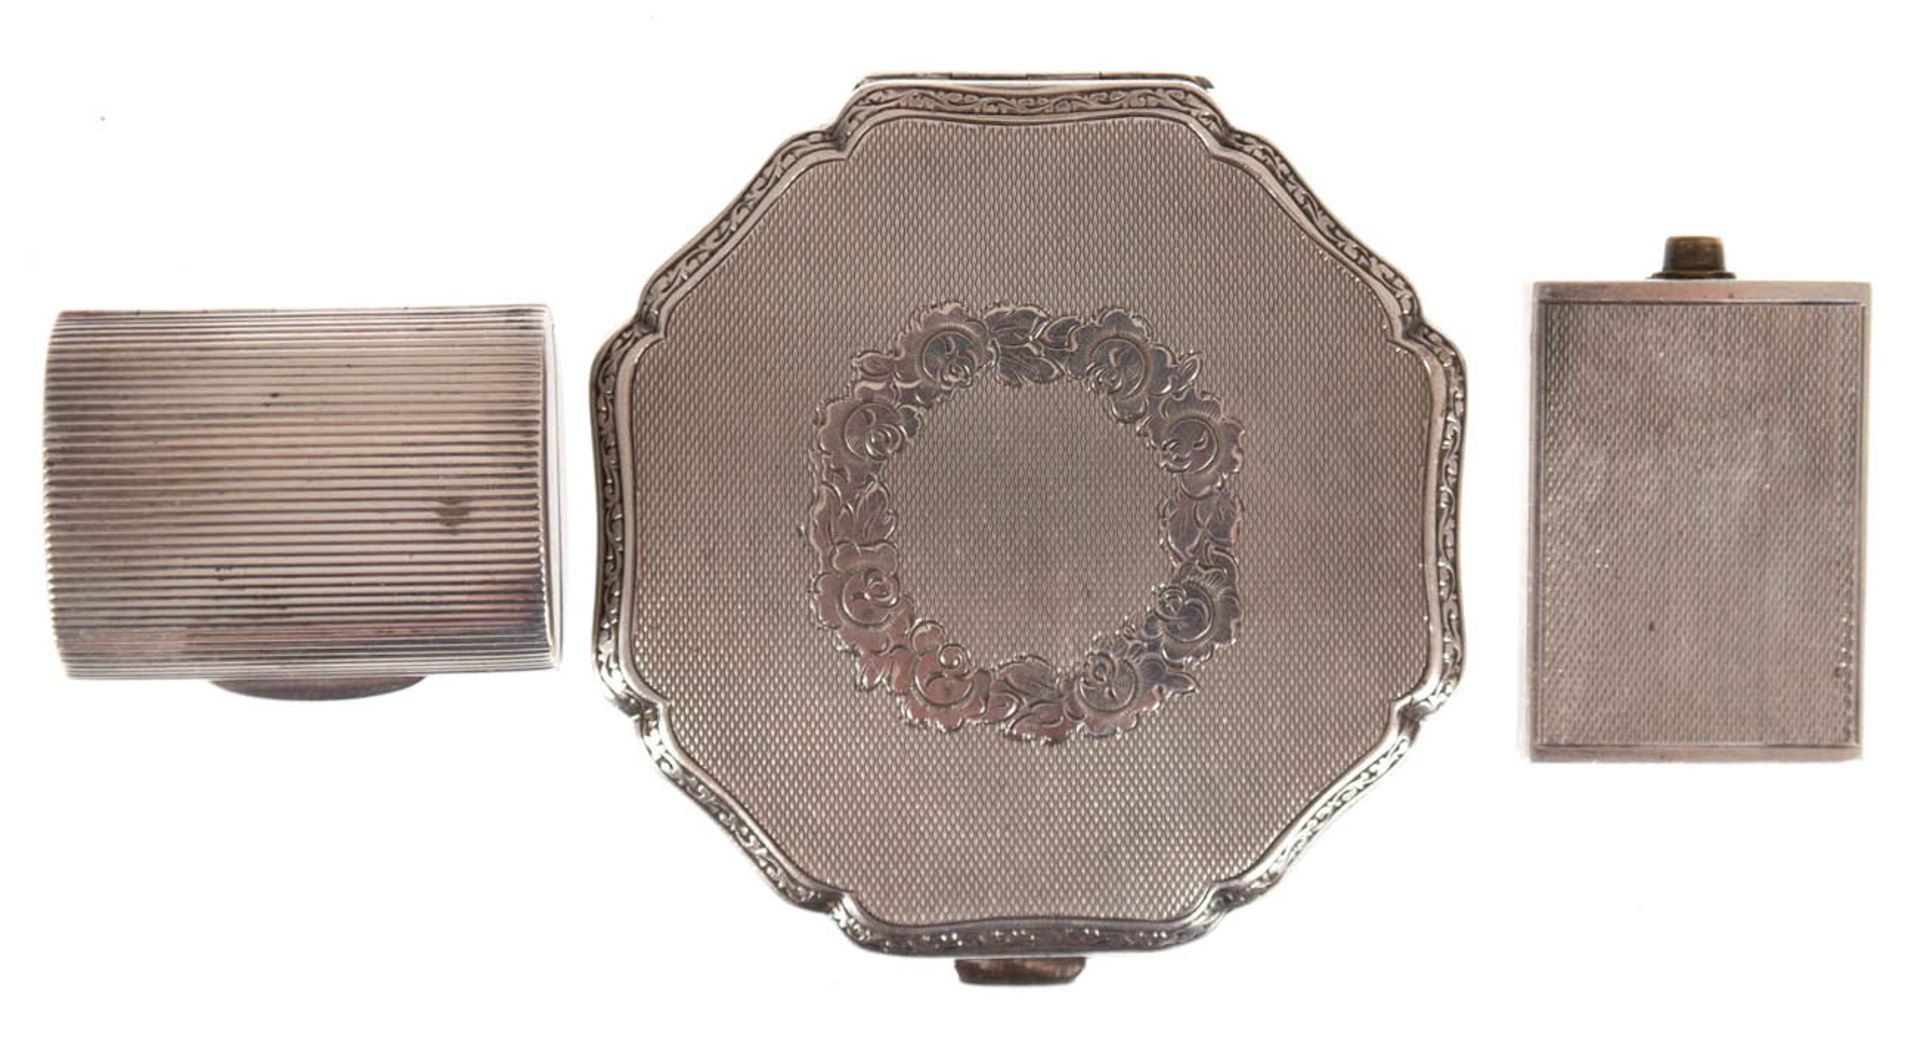 Puderdose, versilbert, Dm. 7 cm, Pillendose 925er Silber, gedellt, L. 4 cm und kl. Flakon(